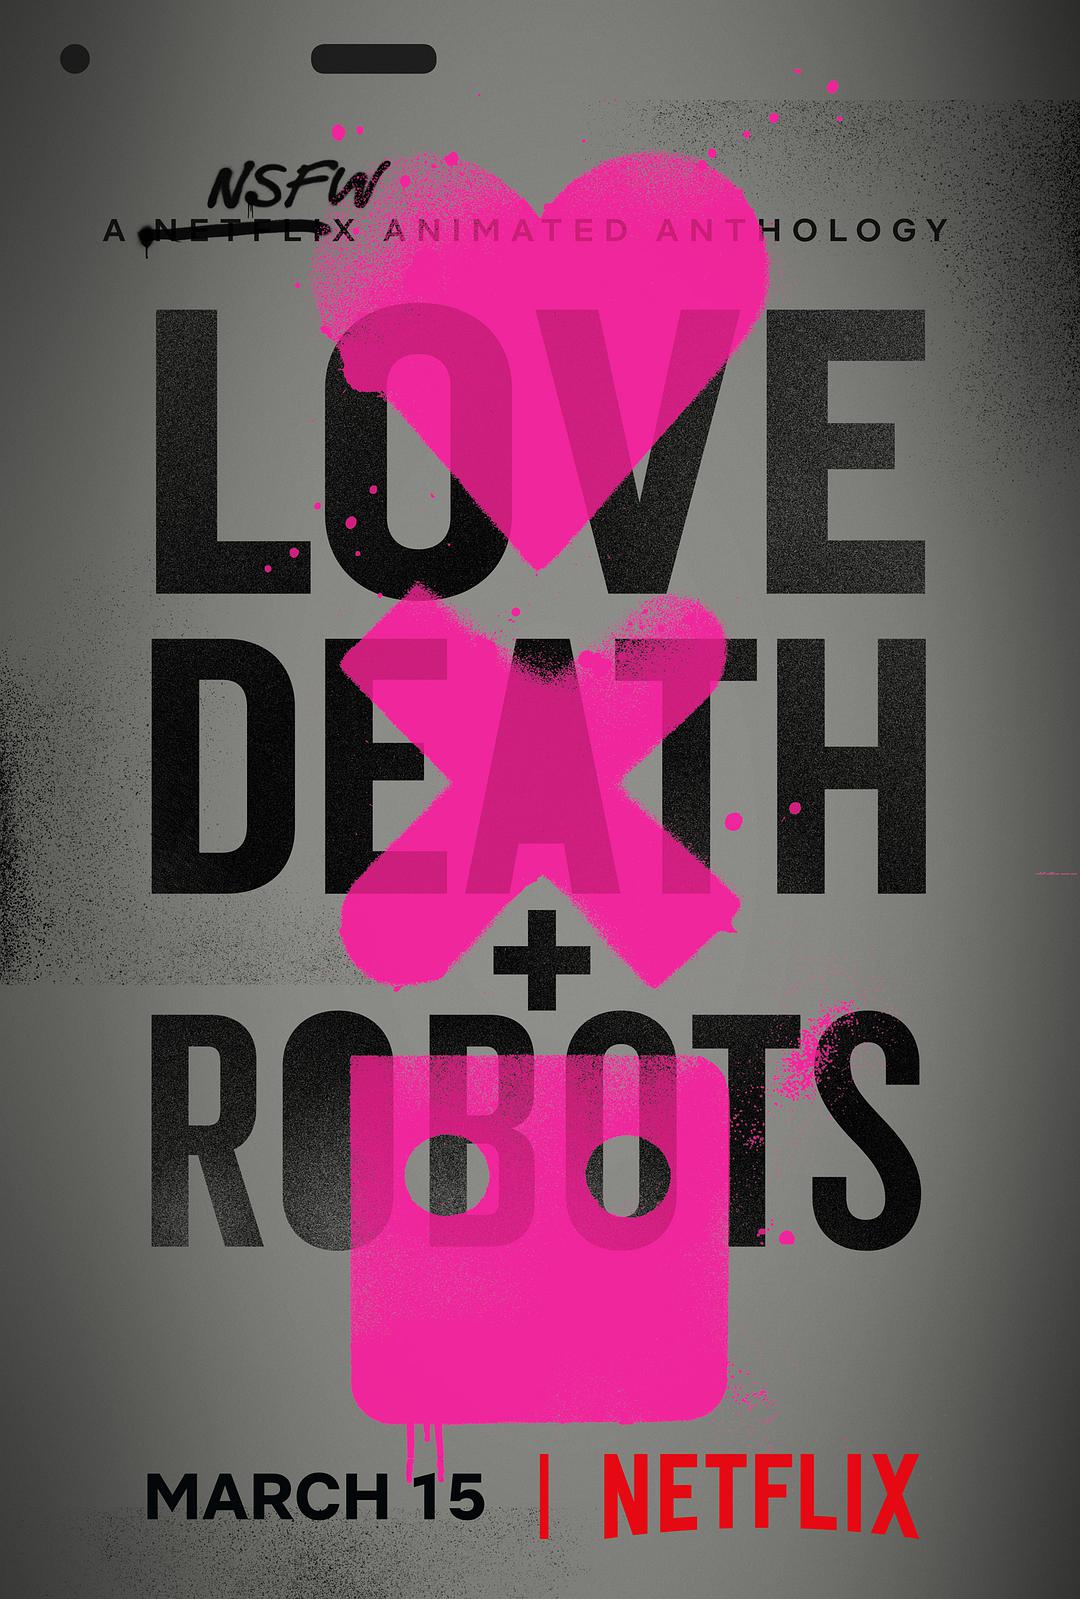 爱，死亡和机器人第1季